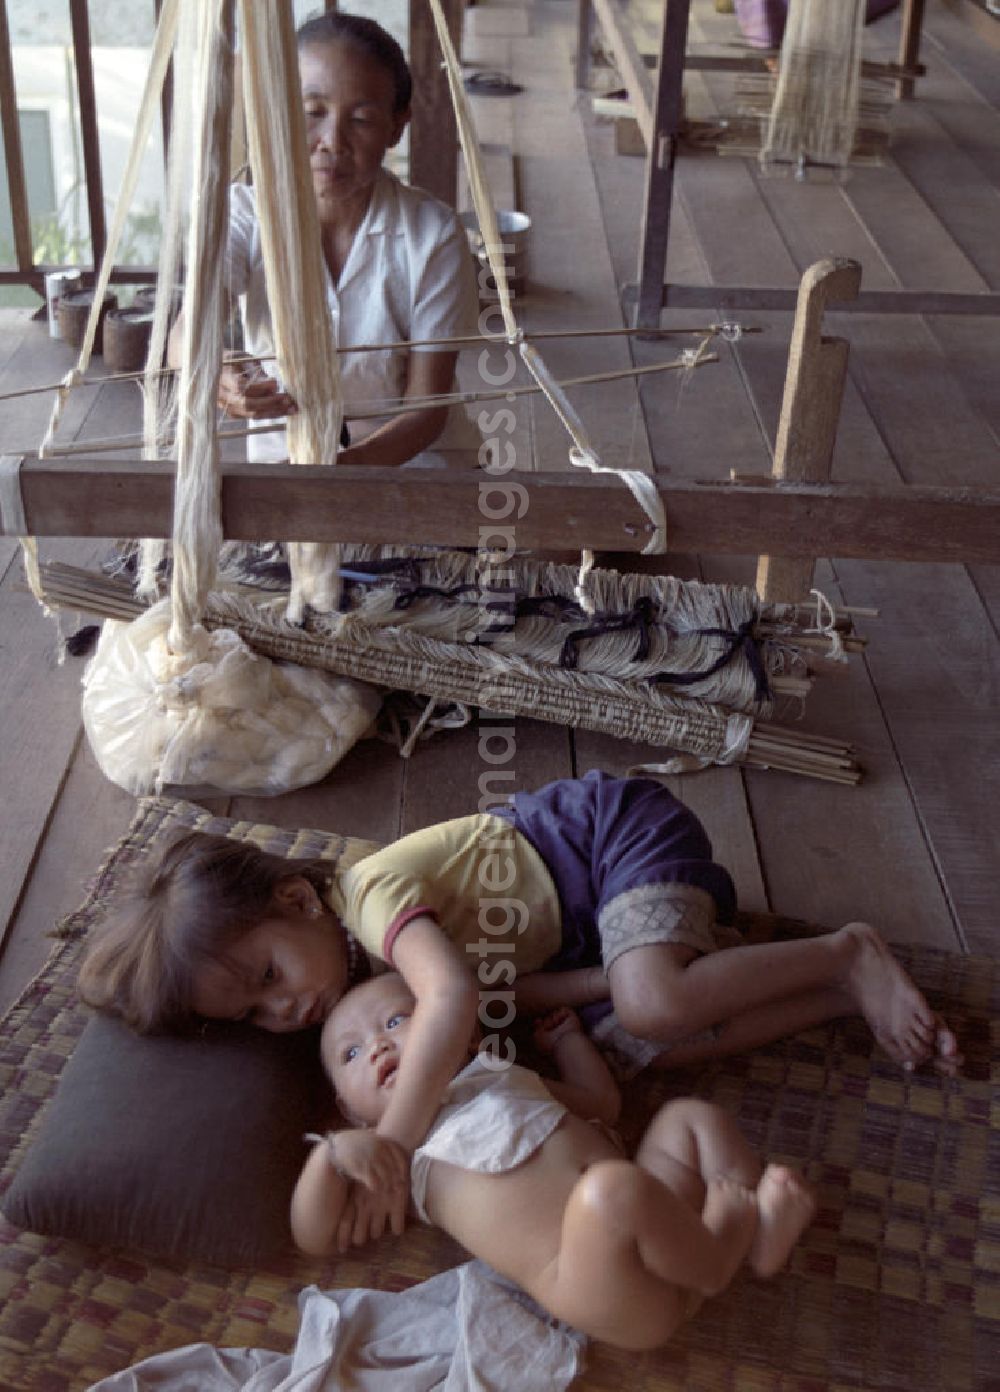 GDR image archive: Vientiane - Eine Weberin bei ihrer Arbeit, während die Kinder daneben auf einer Matte liegen in einer Weberei in Vientiane, der Hauptstadt der Demokratischen Volksrepublik Laos.